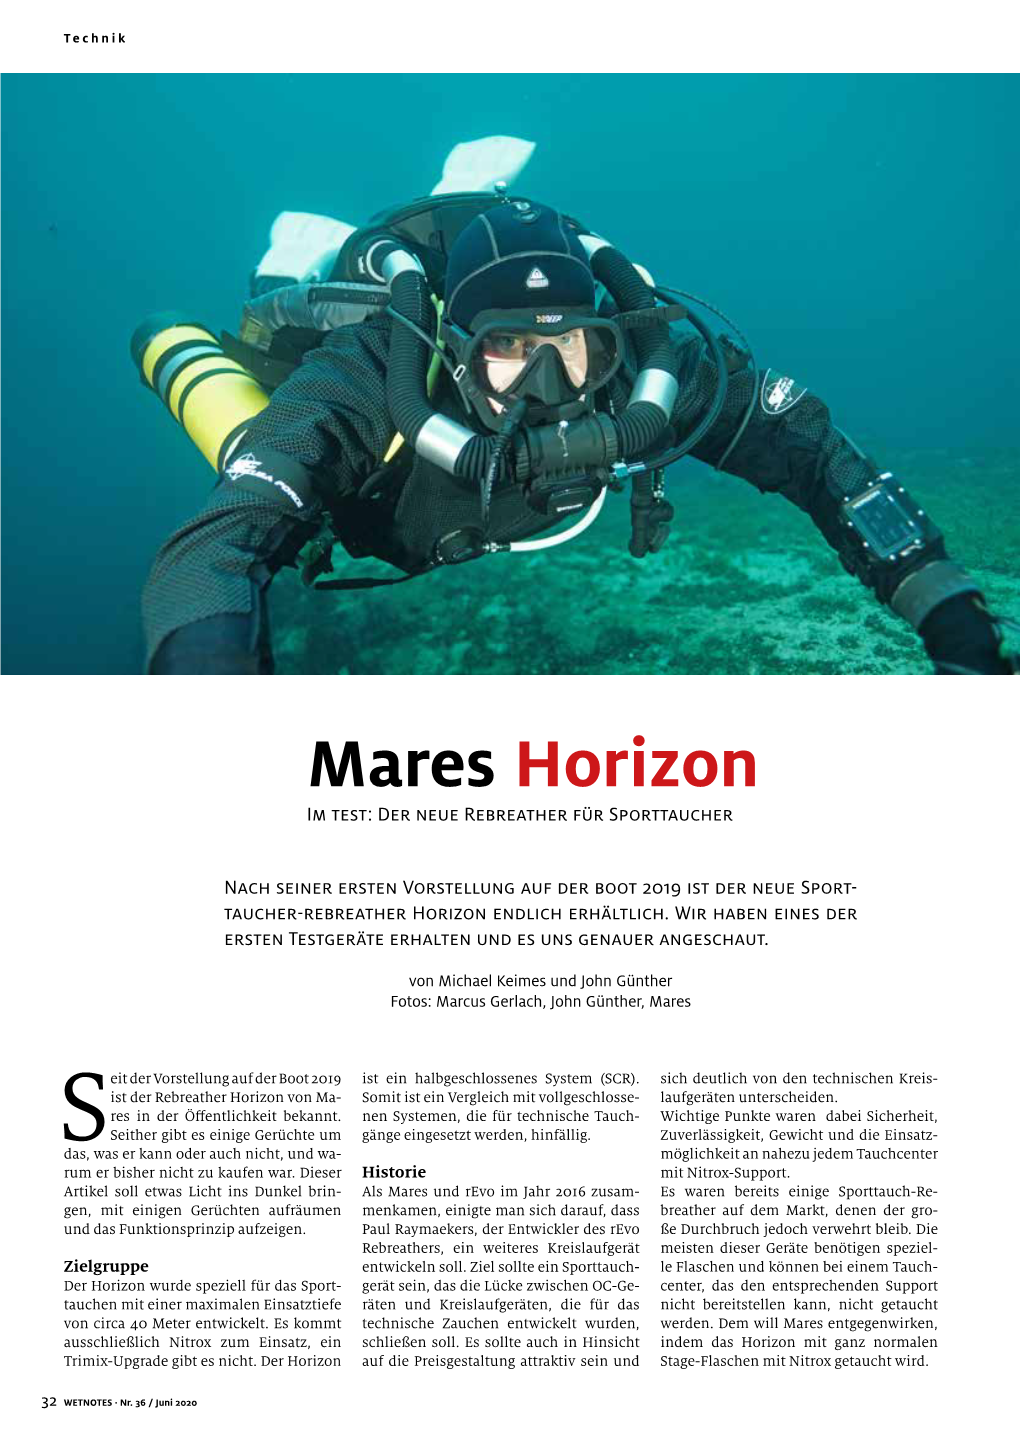 Mares Horizon Im Test: Der Neue Rebreather Für Sporttaucher